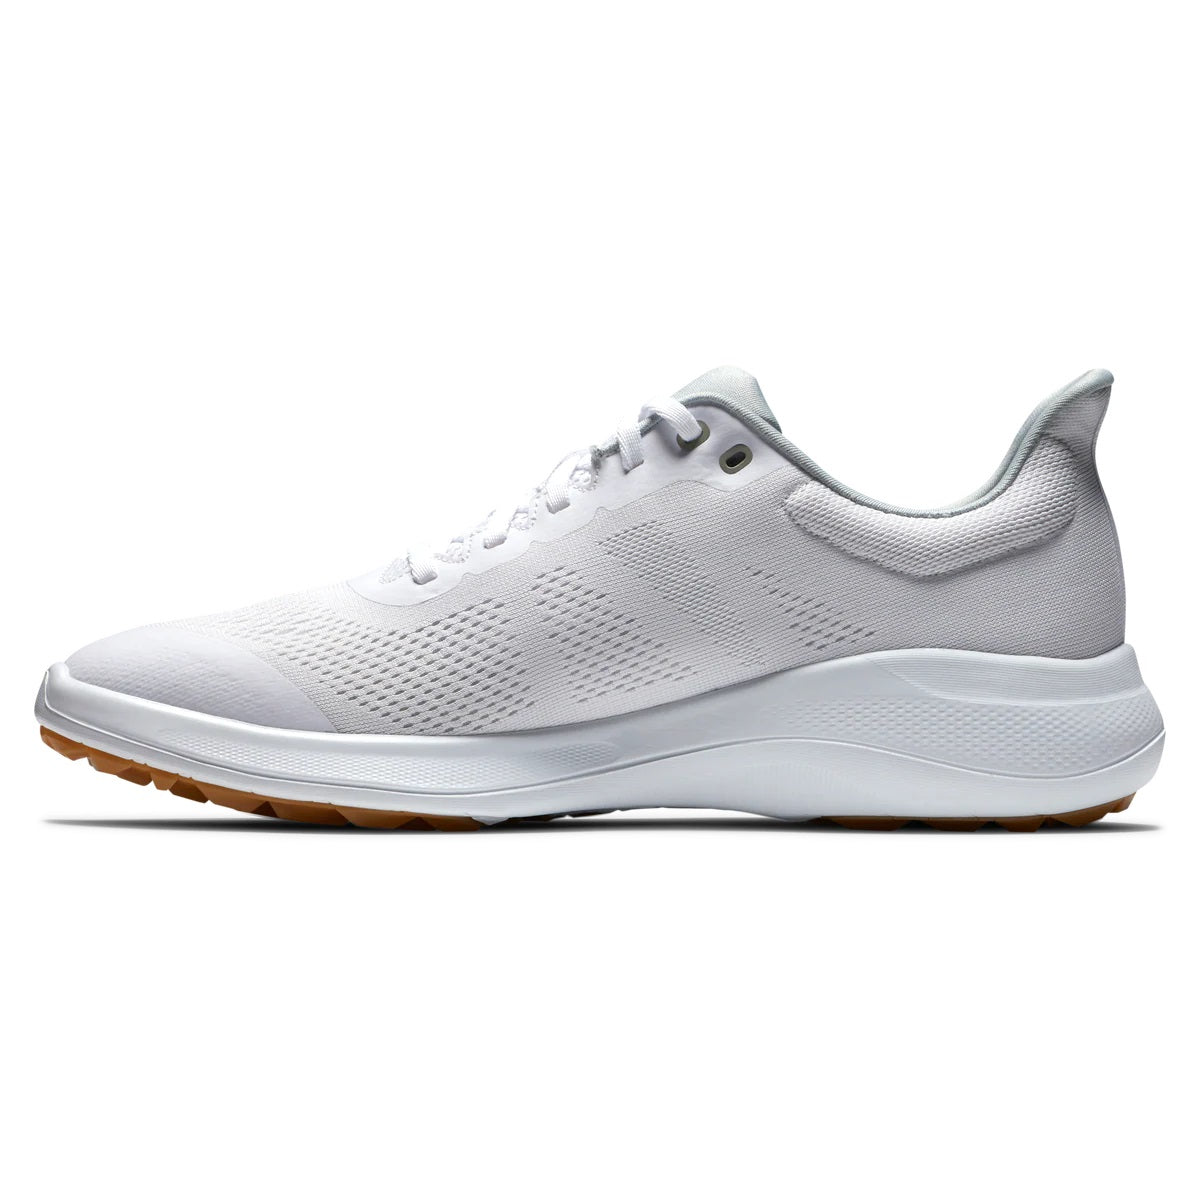 FootJoy Flex Golf Shoes White/Tan 56139 (Previous Season Style)